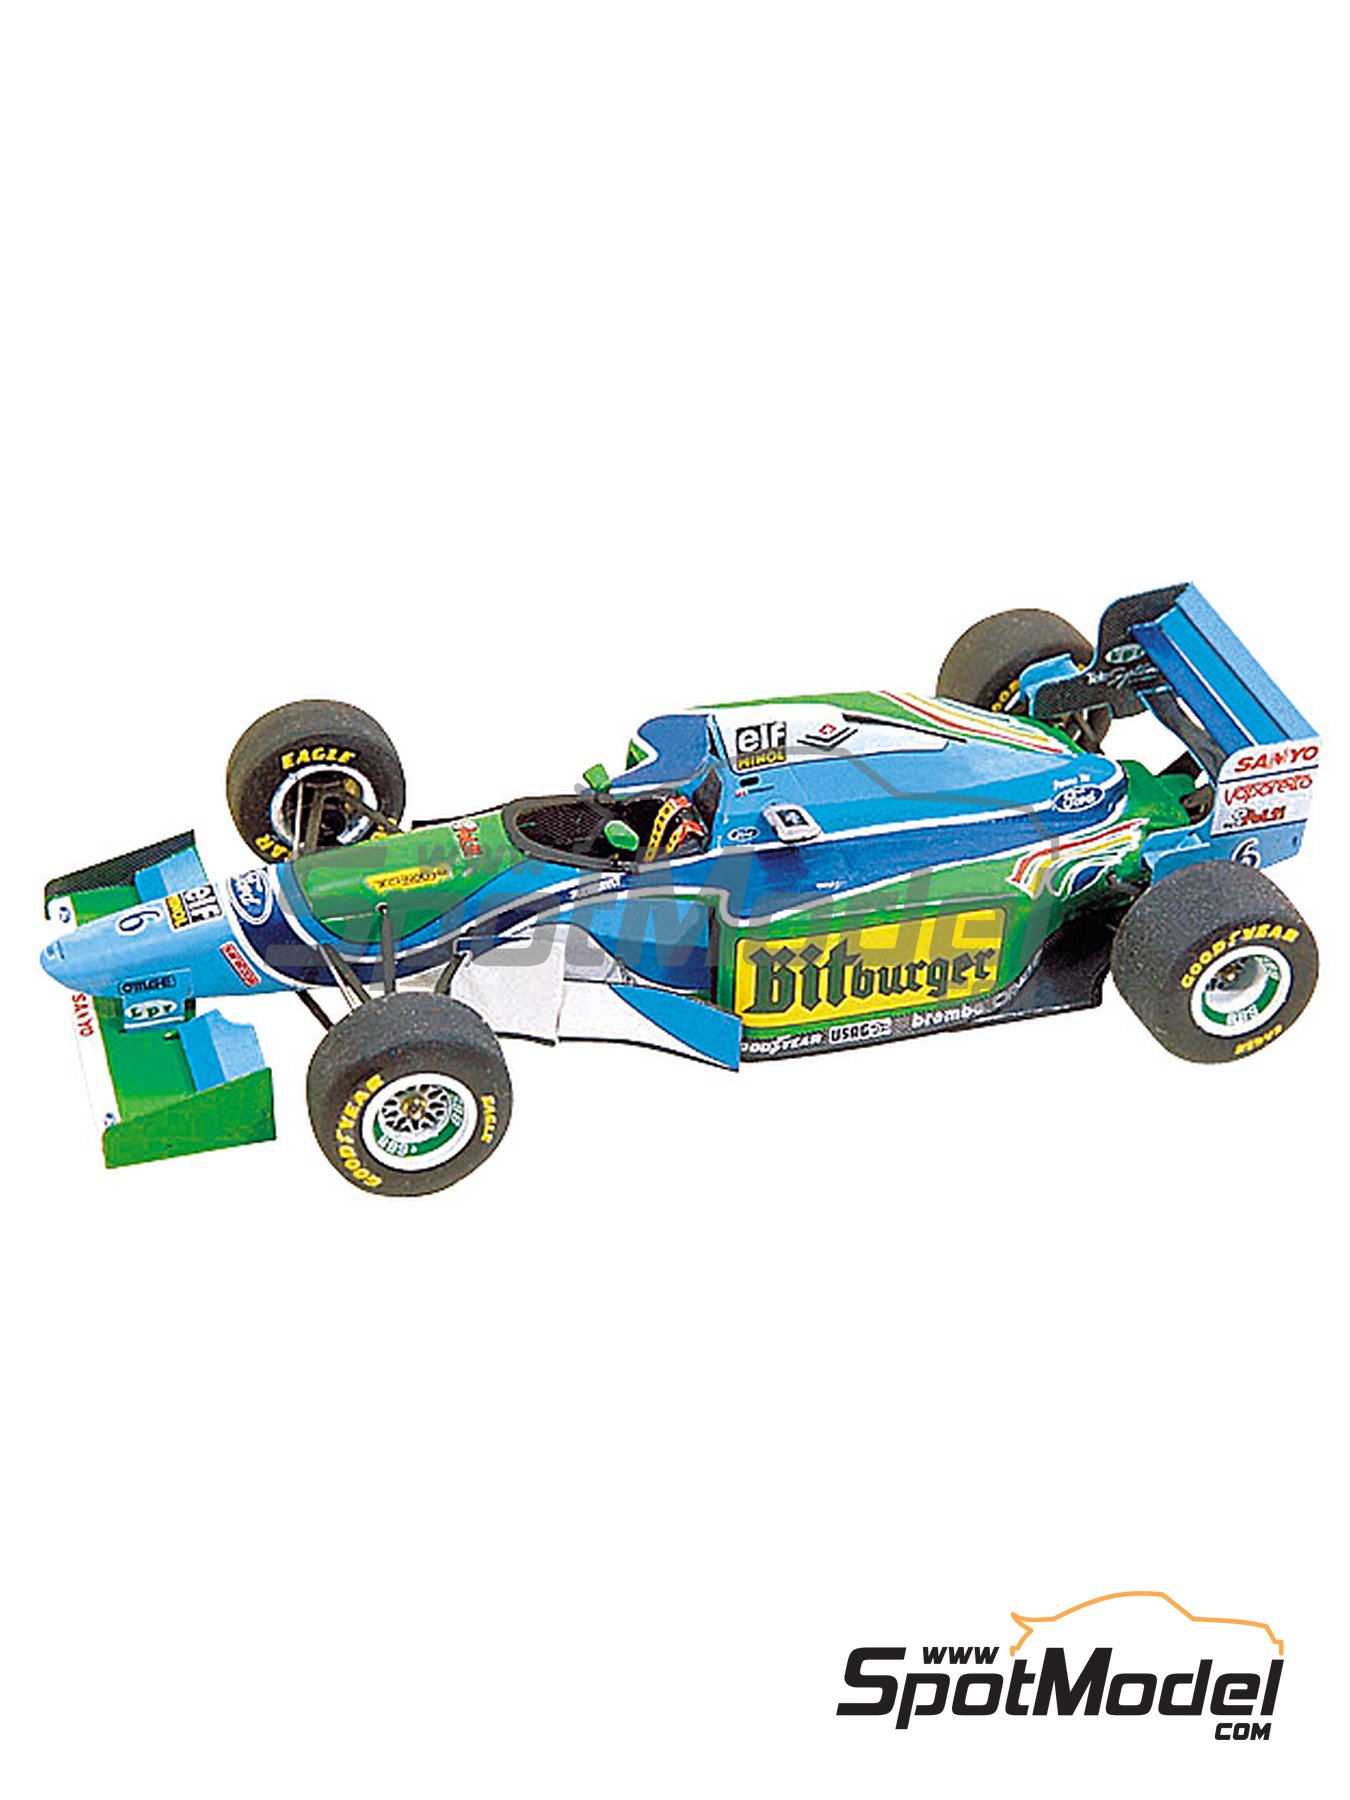 etc 1:18 Namenszug Decals für Schumacher Benetton B193 von Minichamps